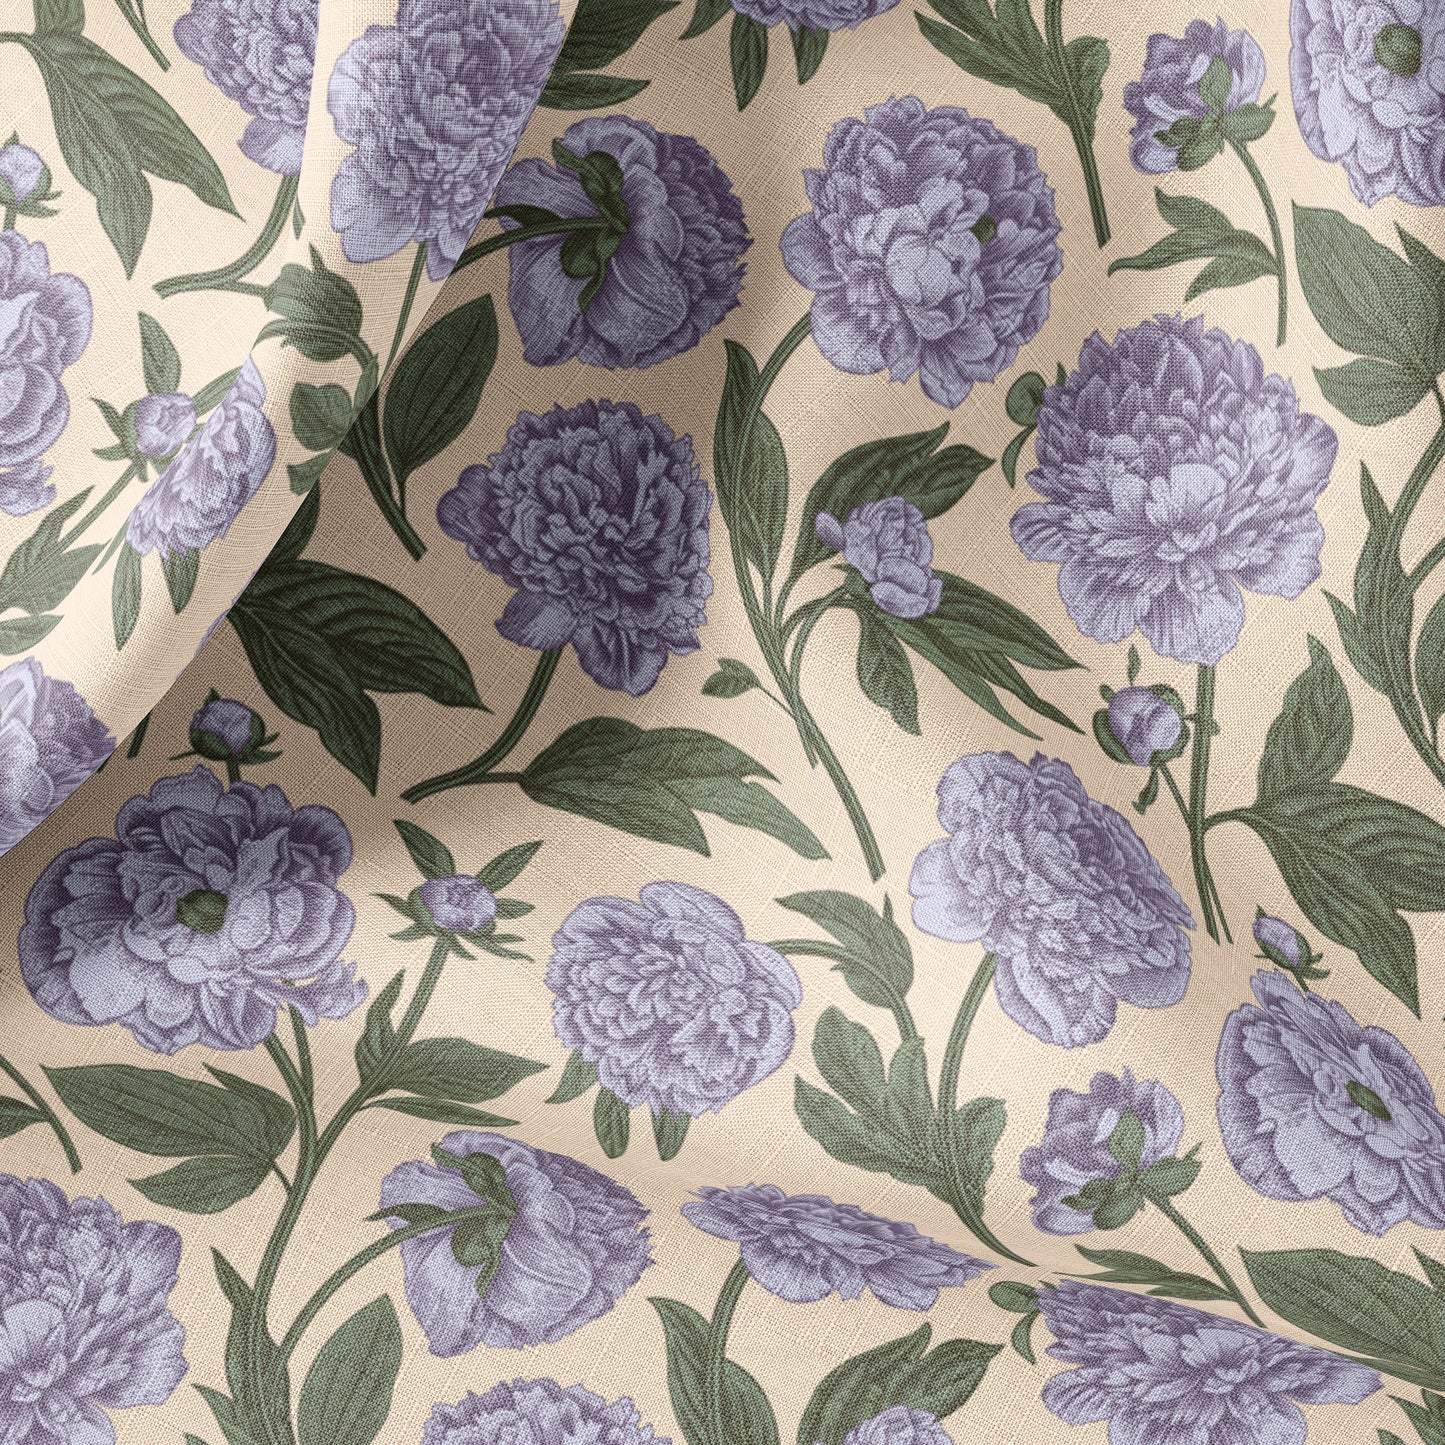 Vintage Floral Print The or Meter, Vintage Botanical Flo – Linen